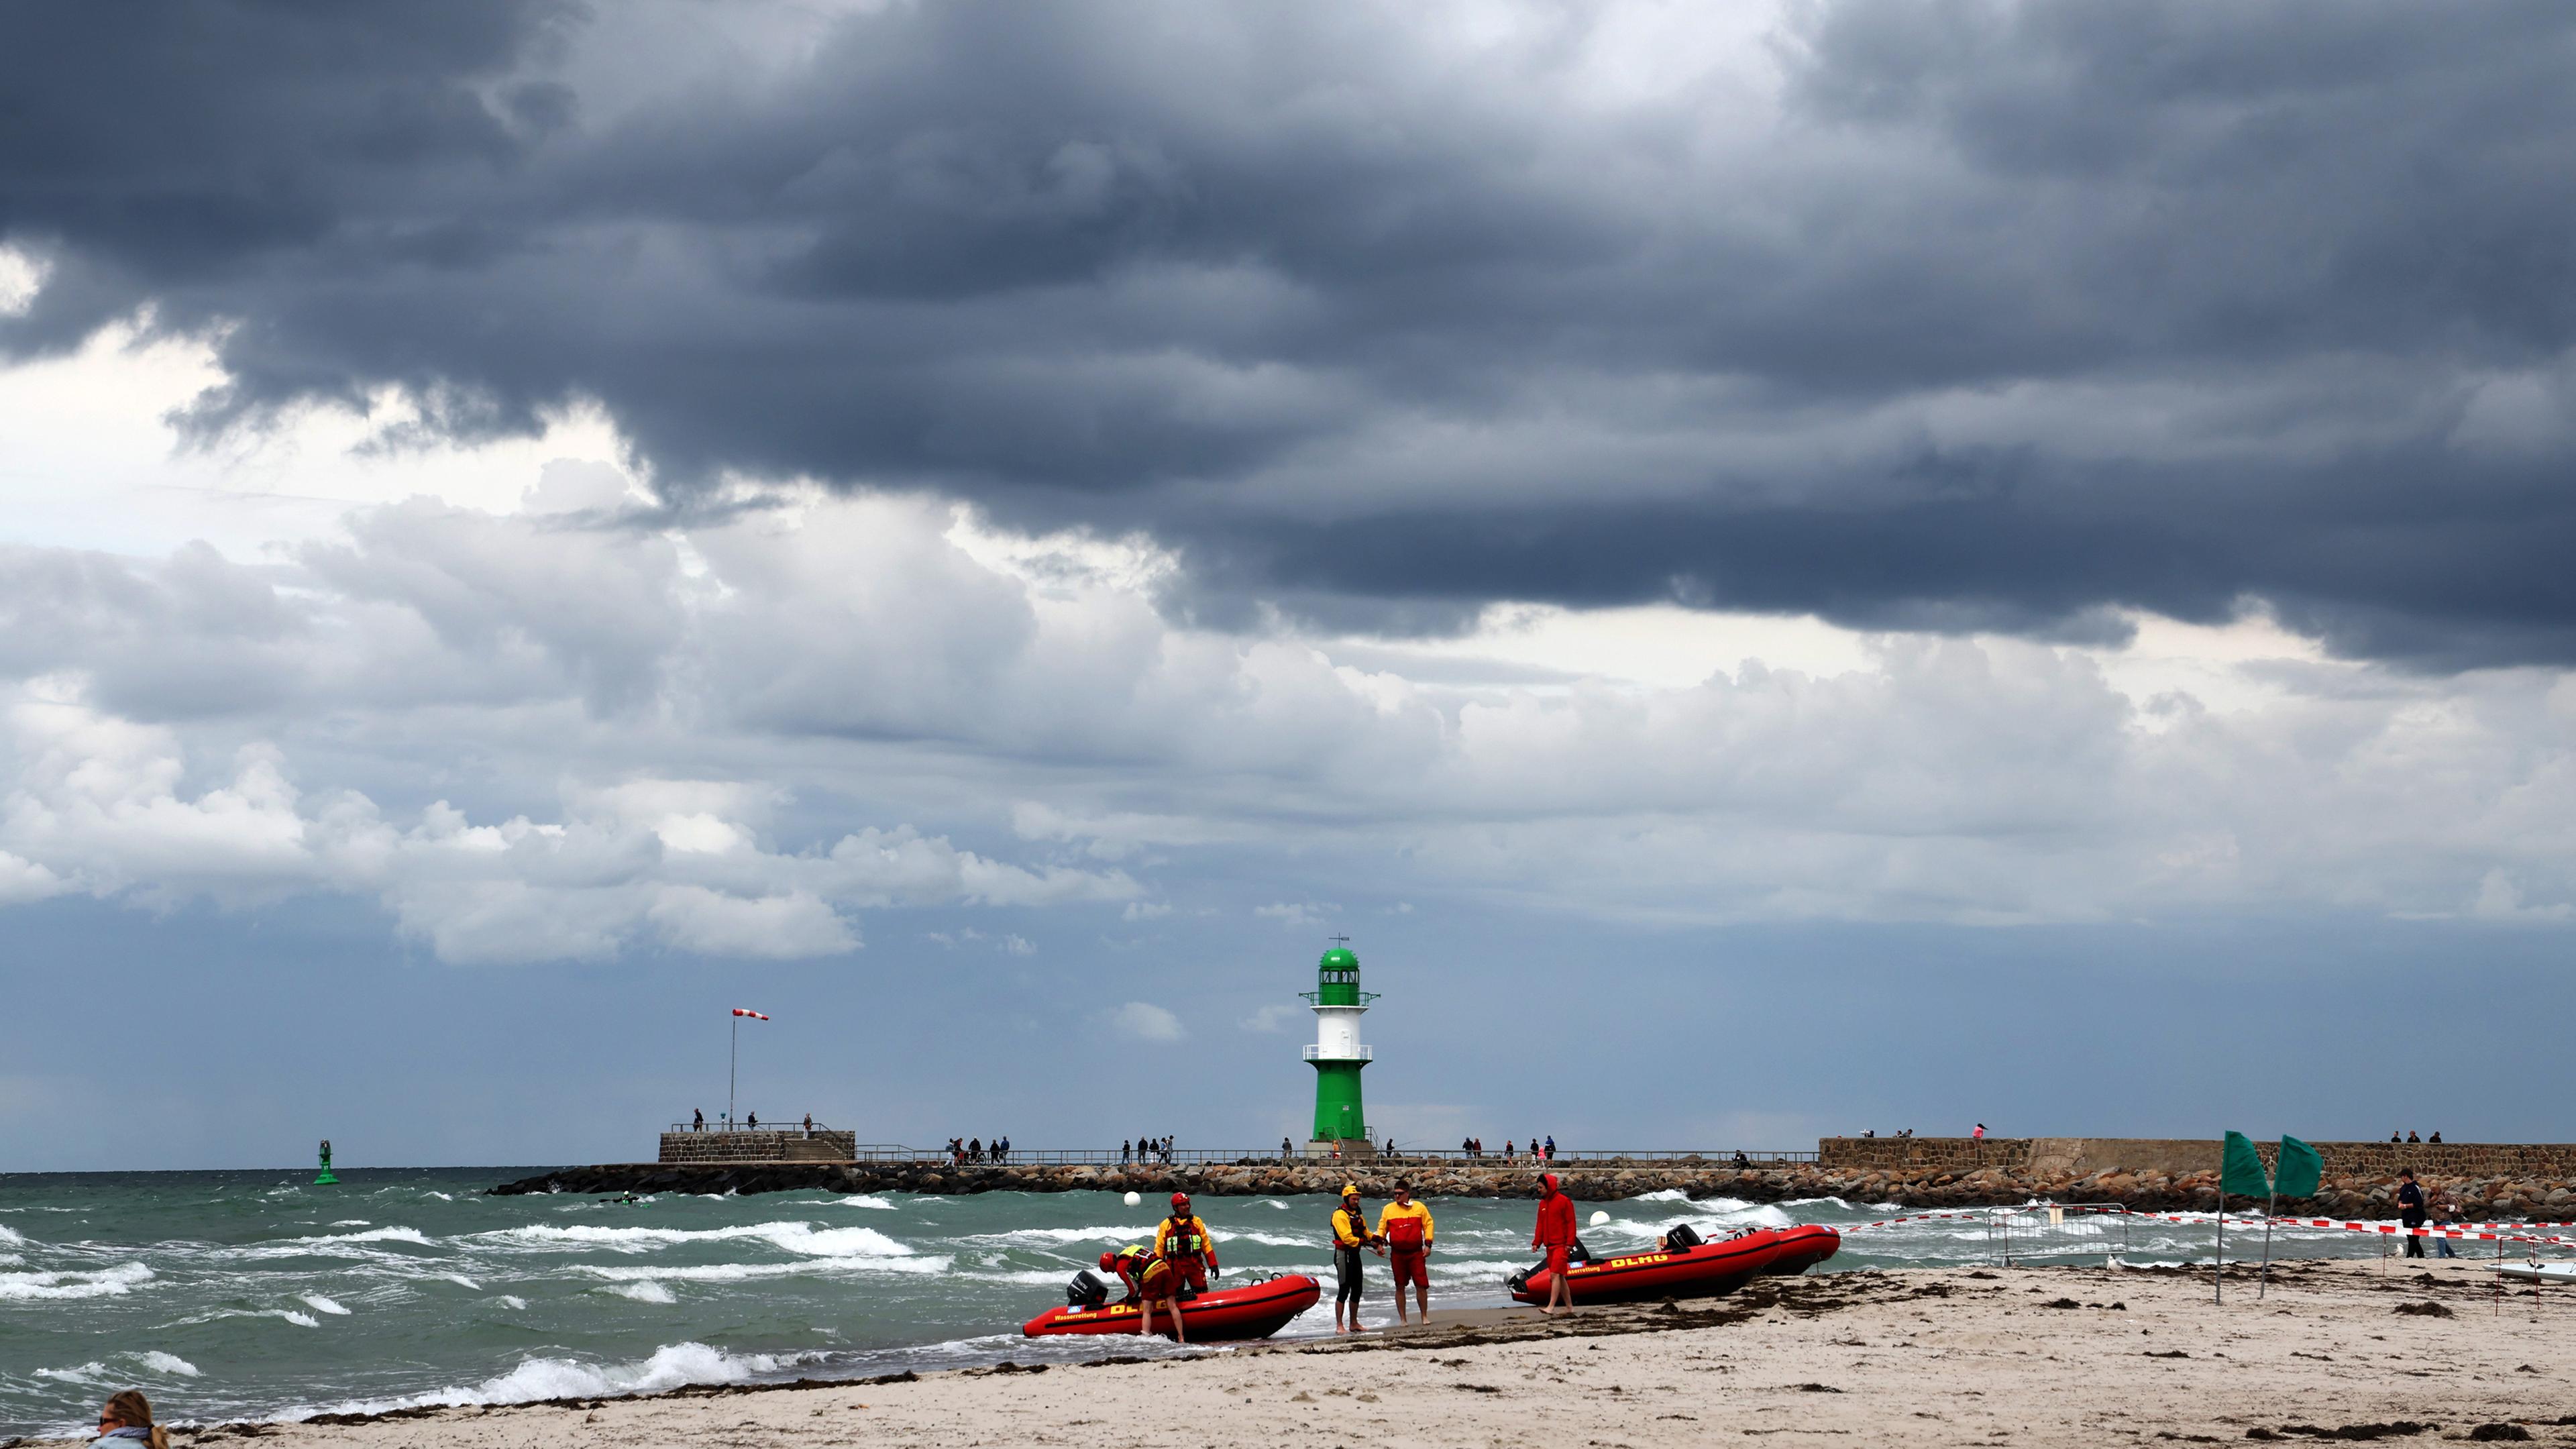 Der Strand von Warnemünde: Im Vordergrund sind zwei rote Boote. Im Hintergrund kann man einen grünen Leuchtturm erkennen.